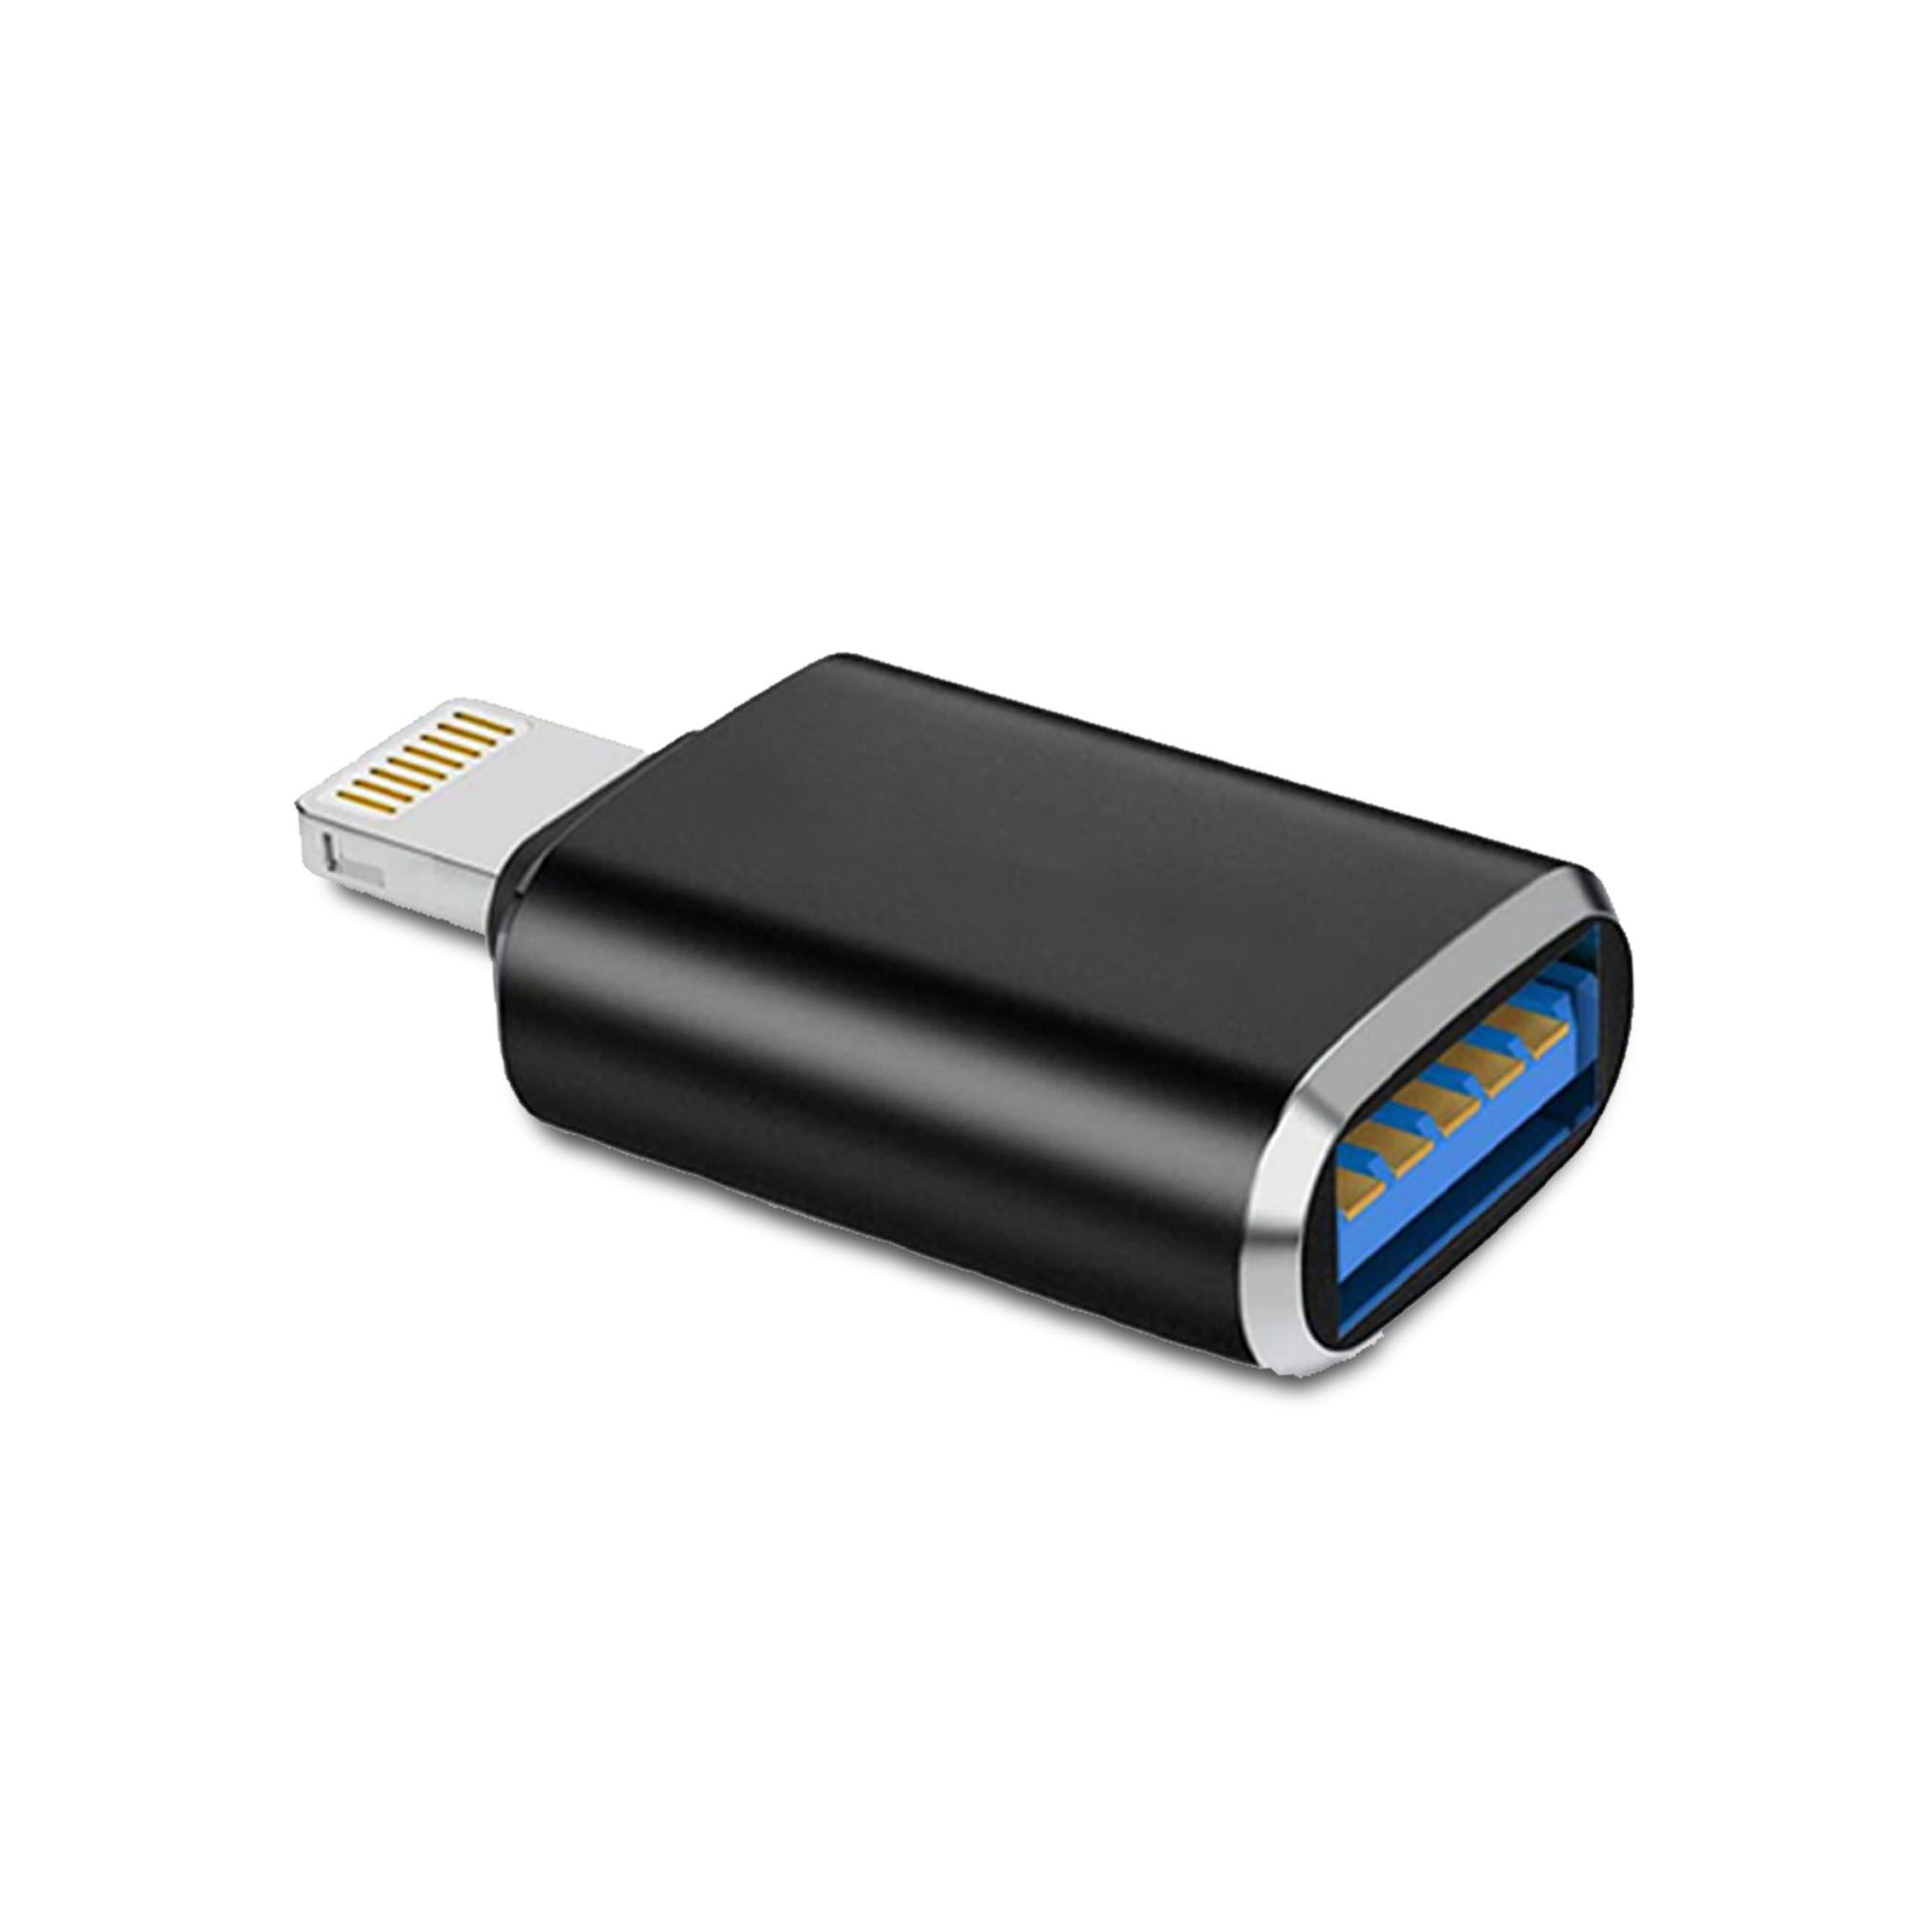 MYTT - MYTT - Adaptador Lightning Iphone a macho a USB 3.0 hembra 100% funcional, alta durabilidad, no se quema